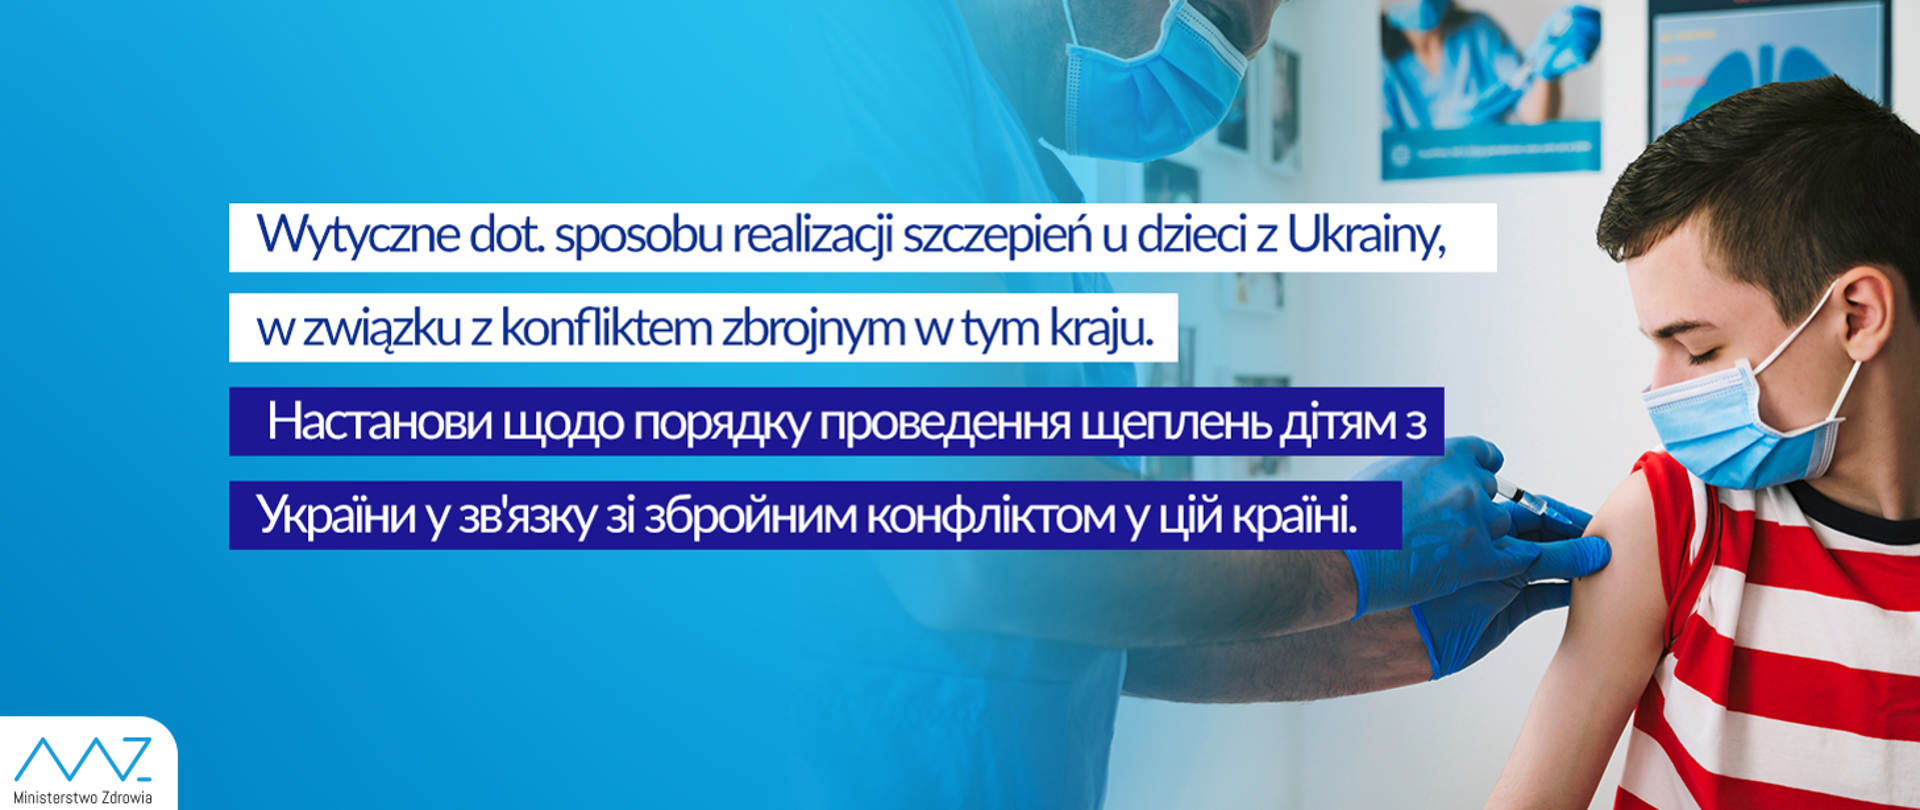 Wytyczne dot. sposobu realizacji szczepień dzieci z Ukrainy, w związku z konfliktem zbrojnym w tym kraju